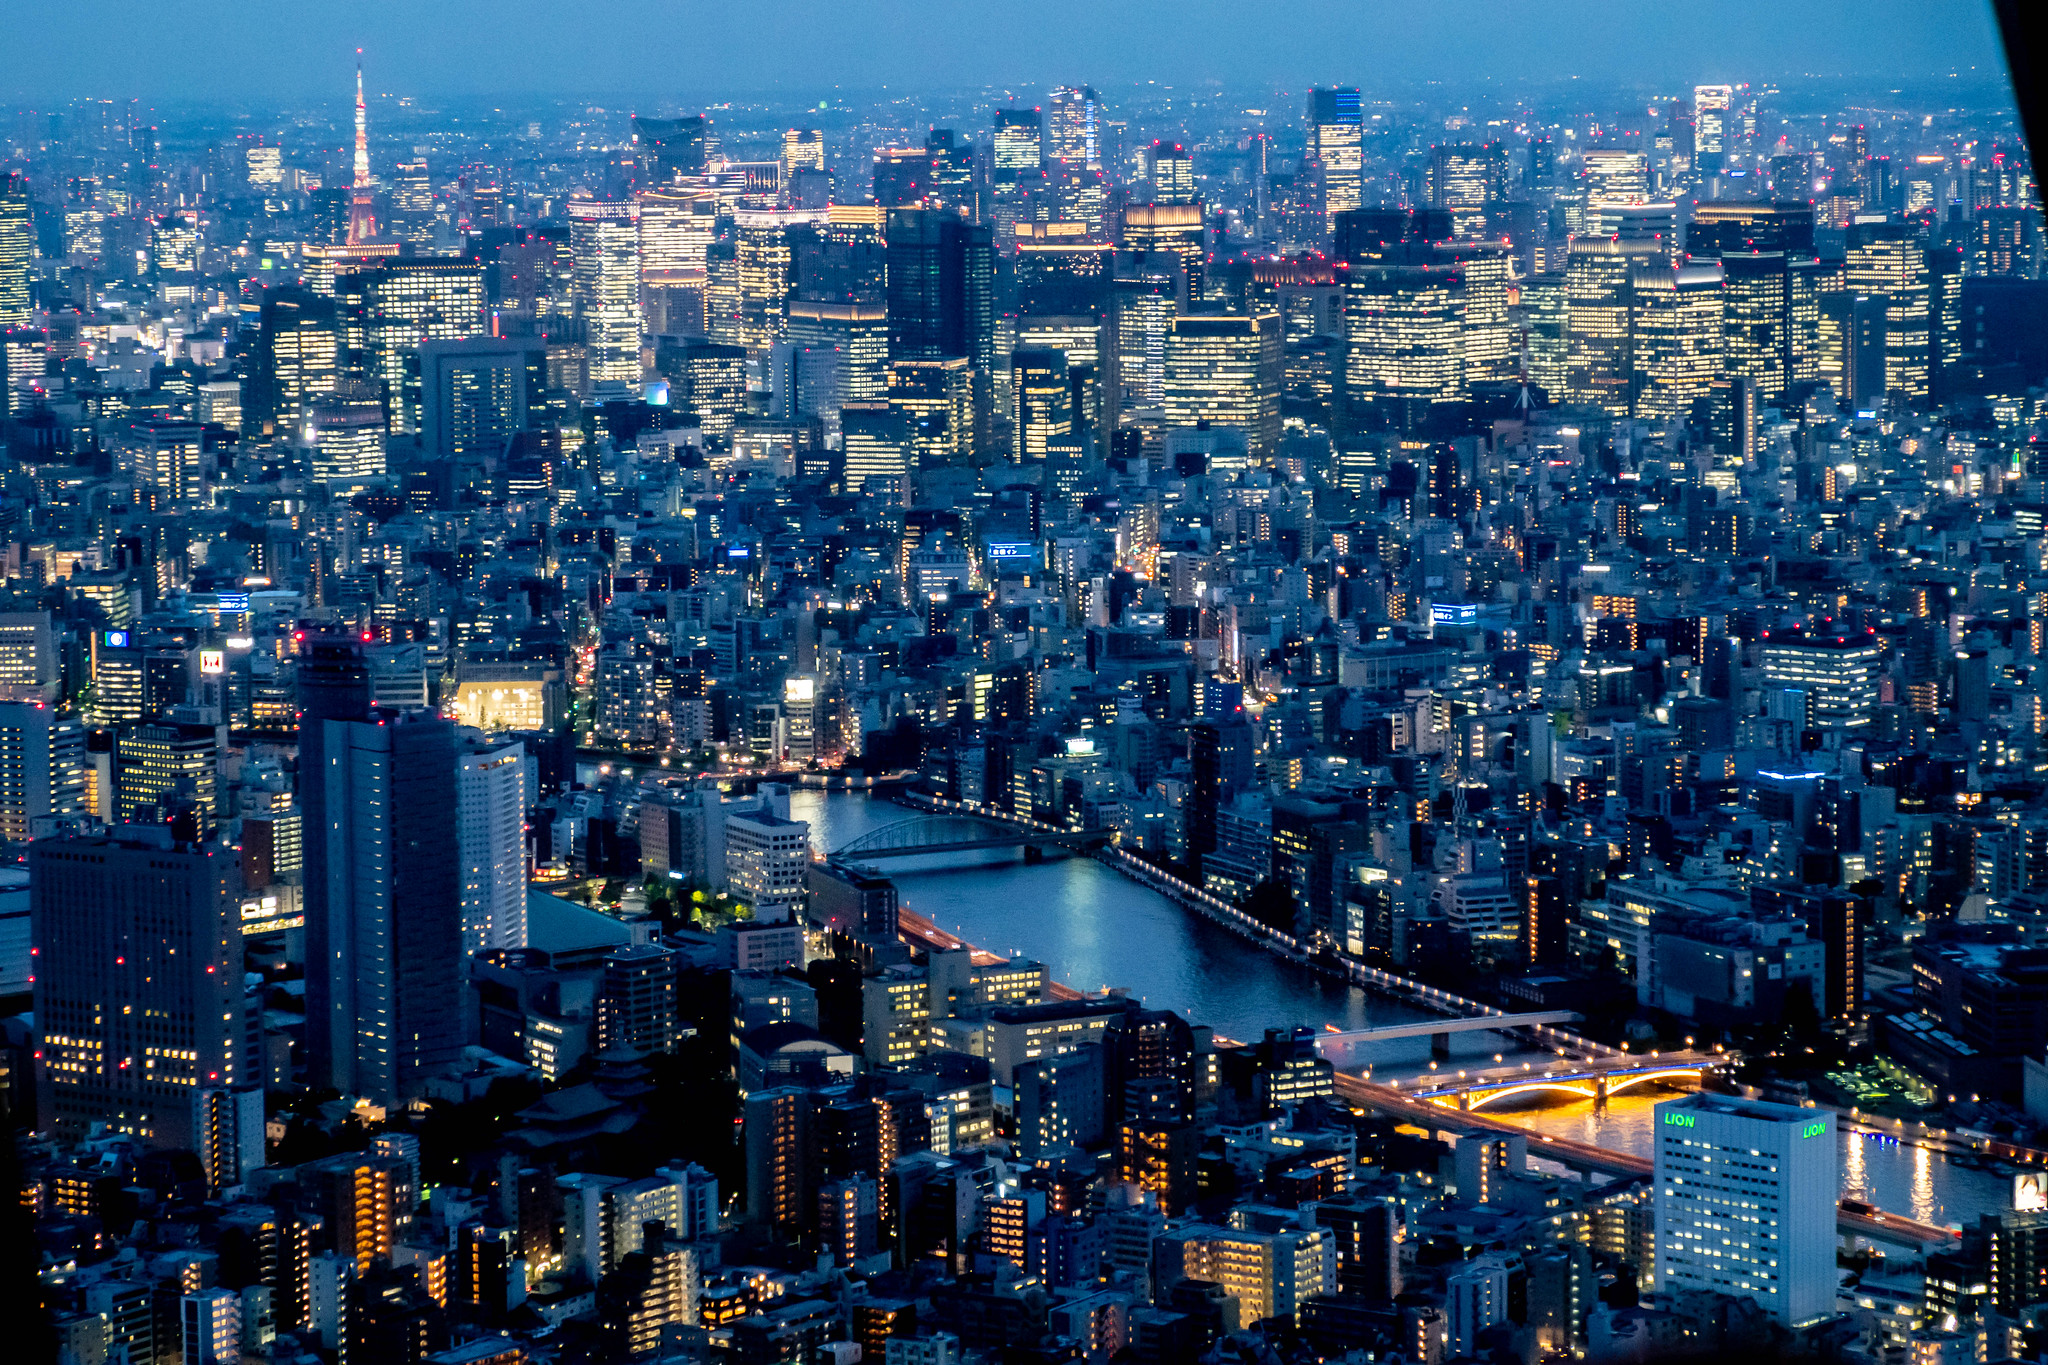 東京スカイツリー 開業8周年記念 半額キャンペーン で8年ぶりの登頂 東京の夜景を撮影 Digital Life Innovator